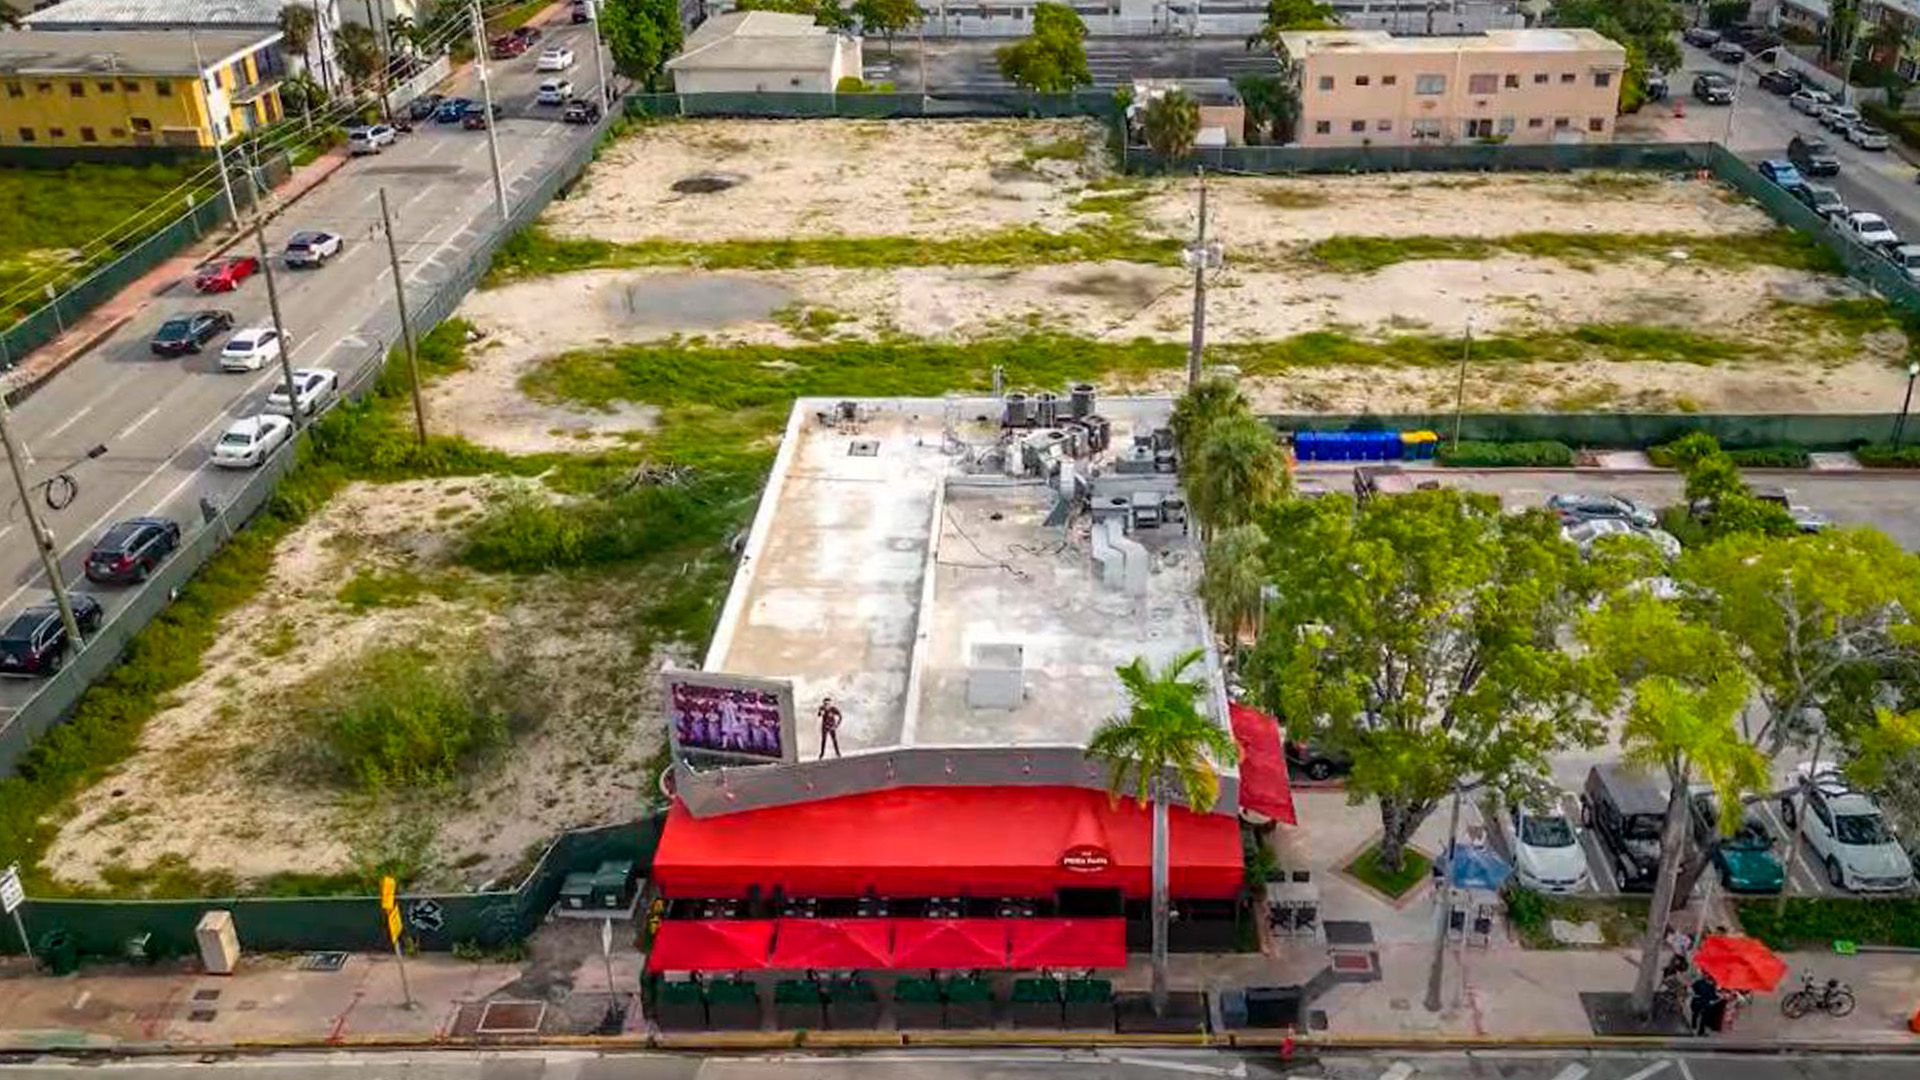 Prima Pasta lleva 30 años en pie en el barrio de North Beach, en Miami Beach, a pesar de las ofertas de venta millonarias. (Foto cortesía de Pedro Portal, fotoperiodista de Miami Herald)

